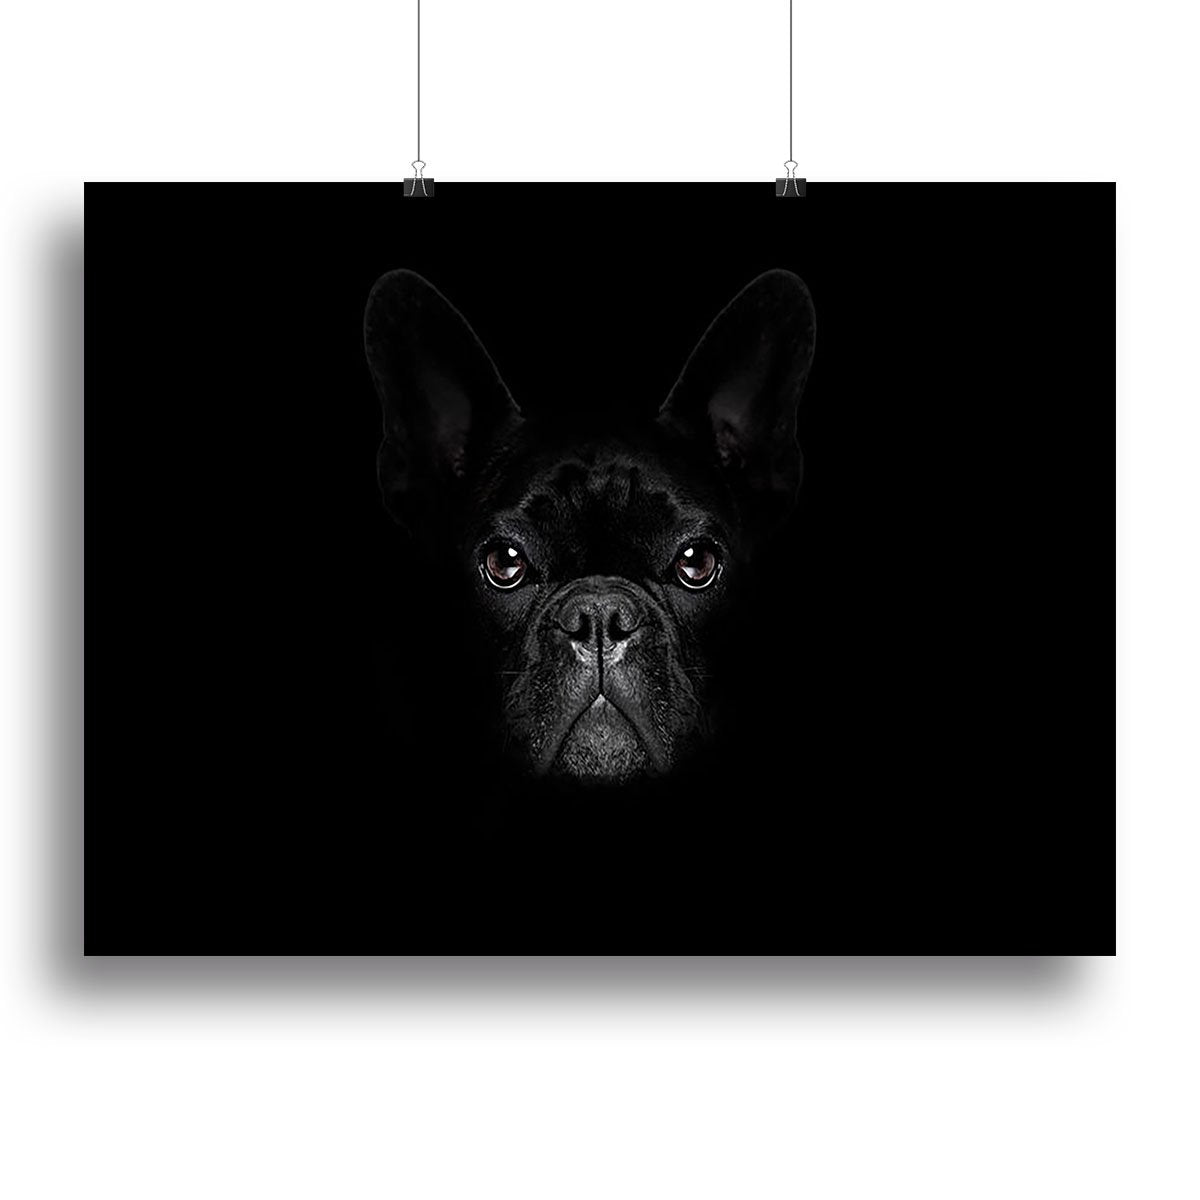 Bulldog dog Canvas Print or Poster